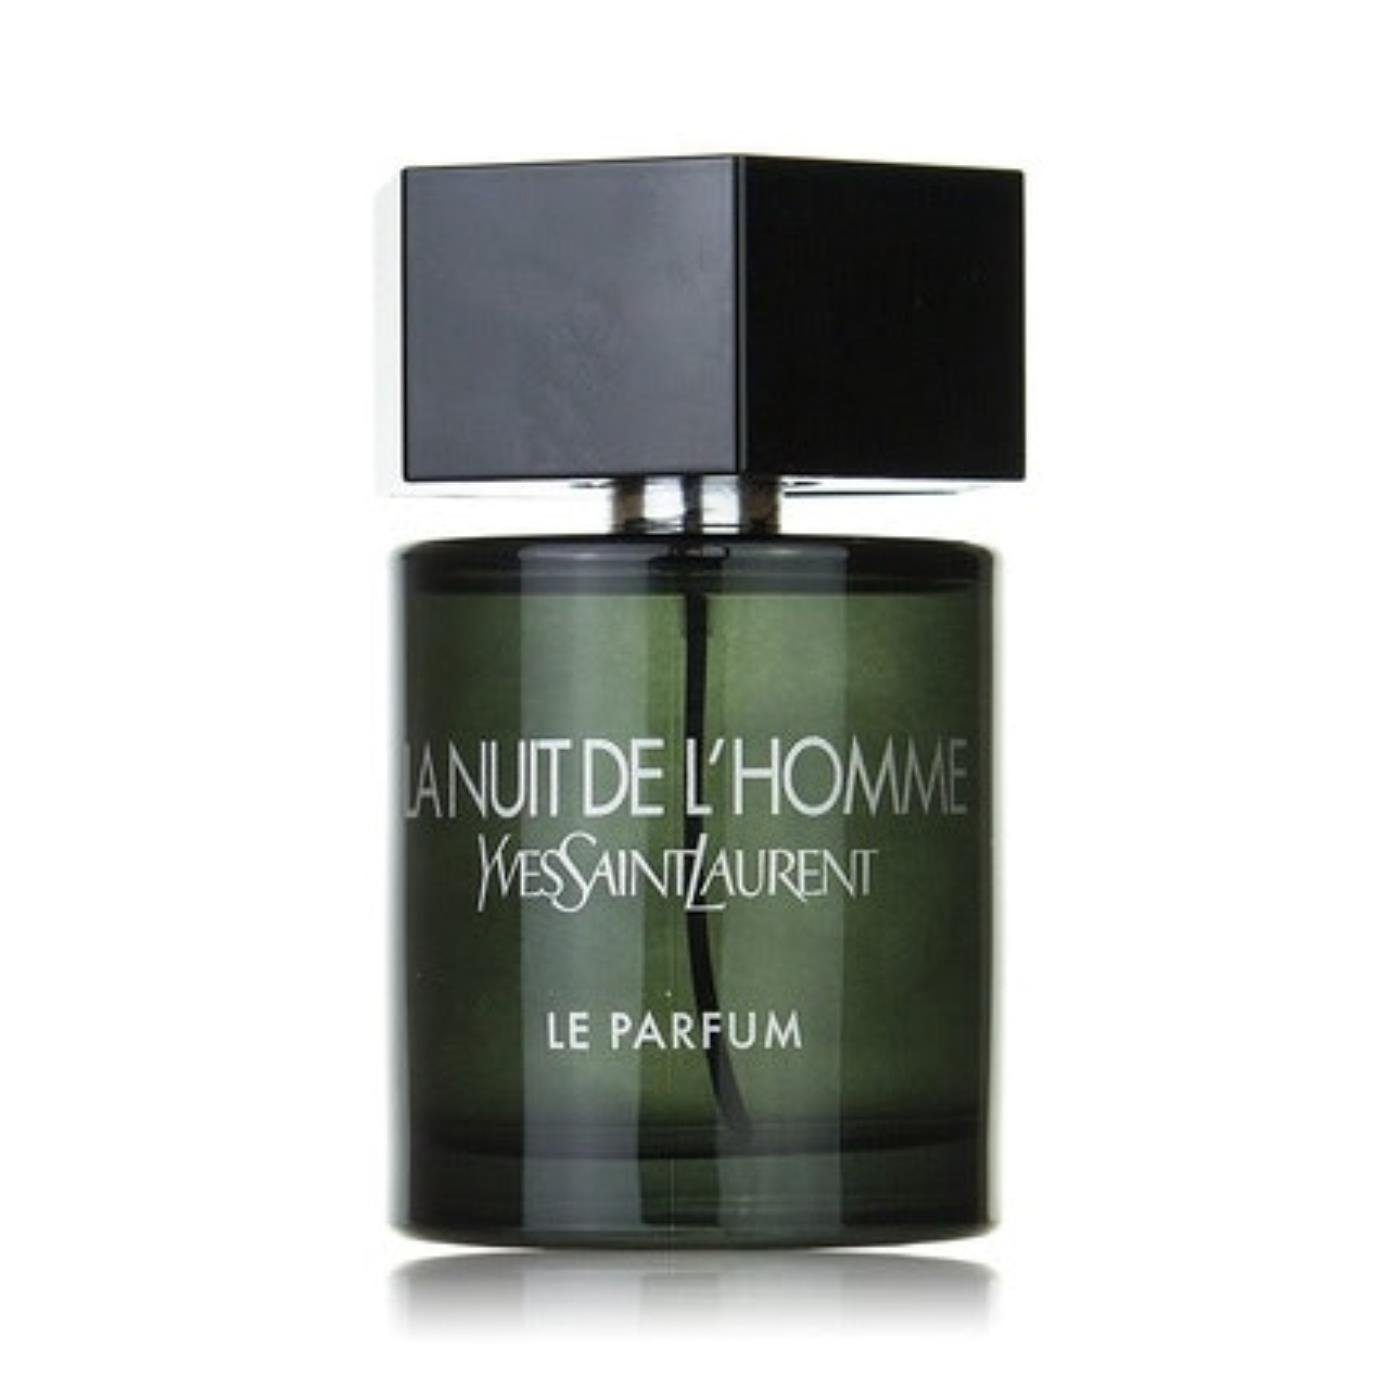 YVES SAINT Saint L'Homme Eau Parfum Laurent Yves de Parfum Le de La LAURENT Nuit